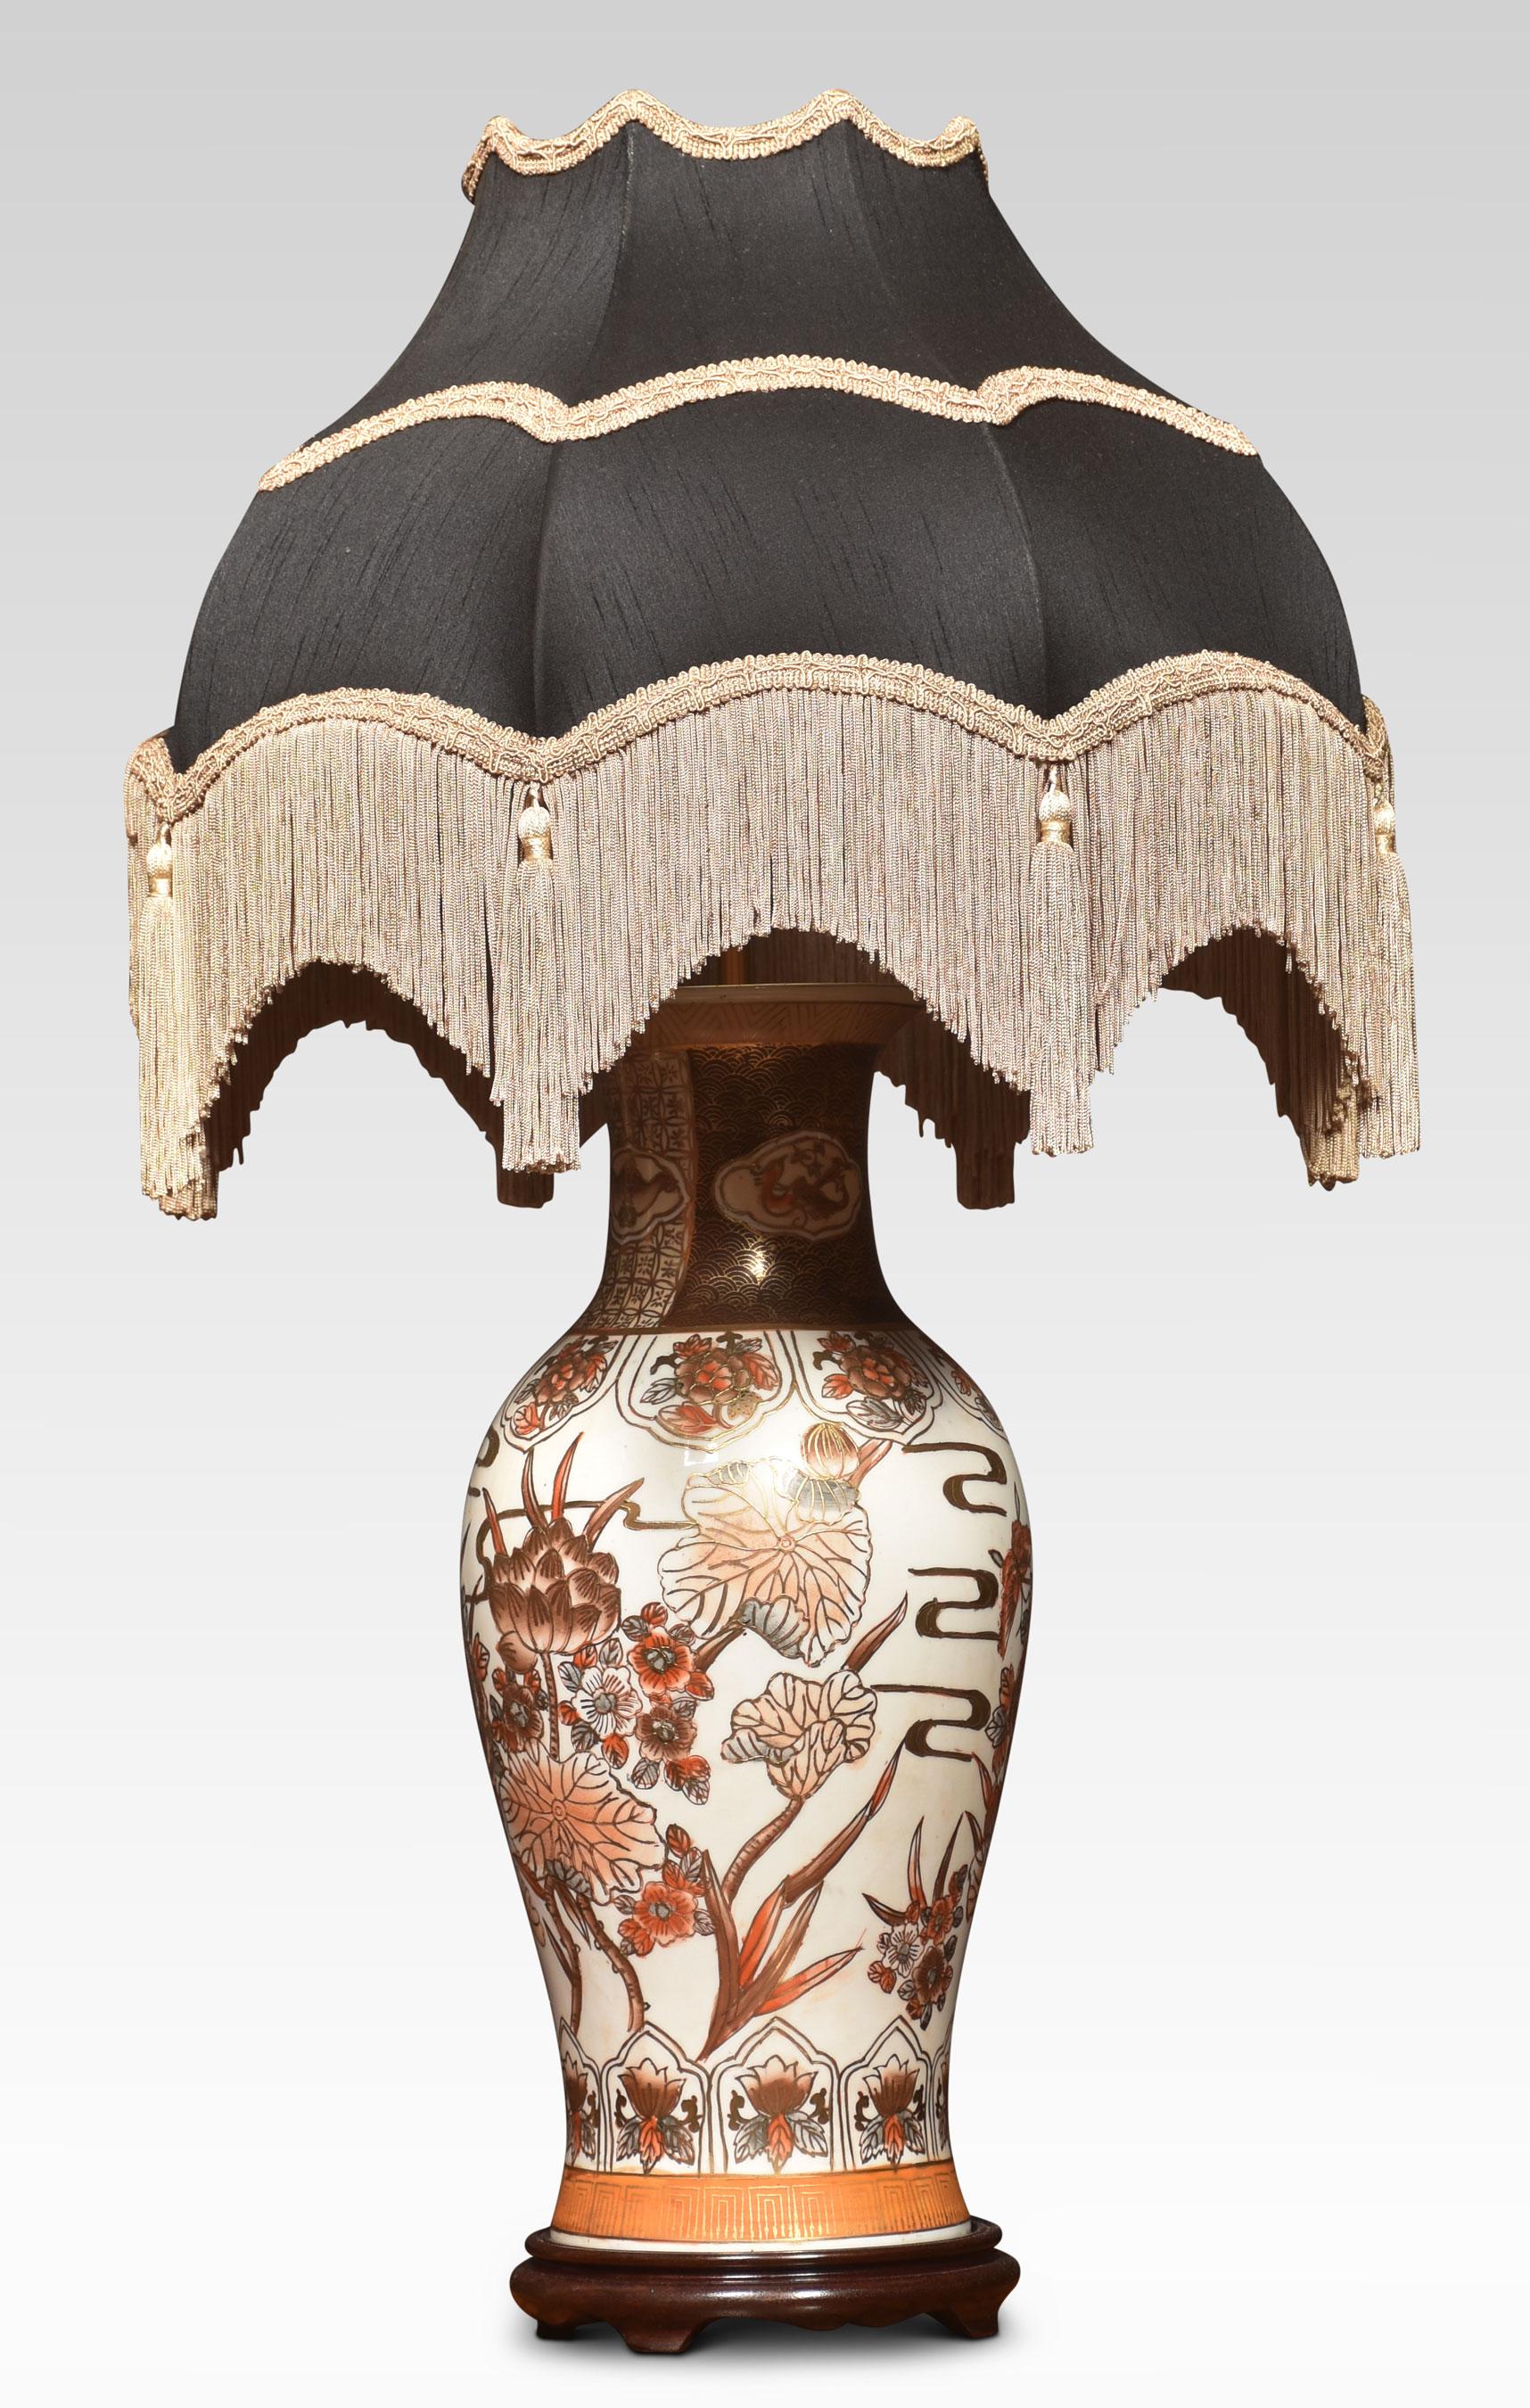 Japanische Satsuma Porzellanvasen Lampe in Balusterform auf gestuftem Holzsockel erhöht. Der Lampenschirm ist nicht im Lieferumfang enthalten.
Abmessungen
Höhe 23 Zoll
Breite 8,5 Zoll
Tiefe 8,5 Zoll.